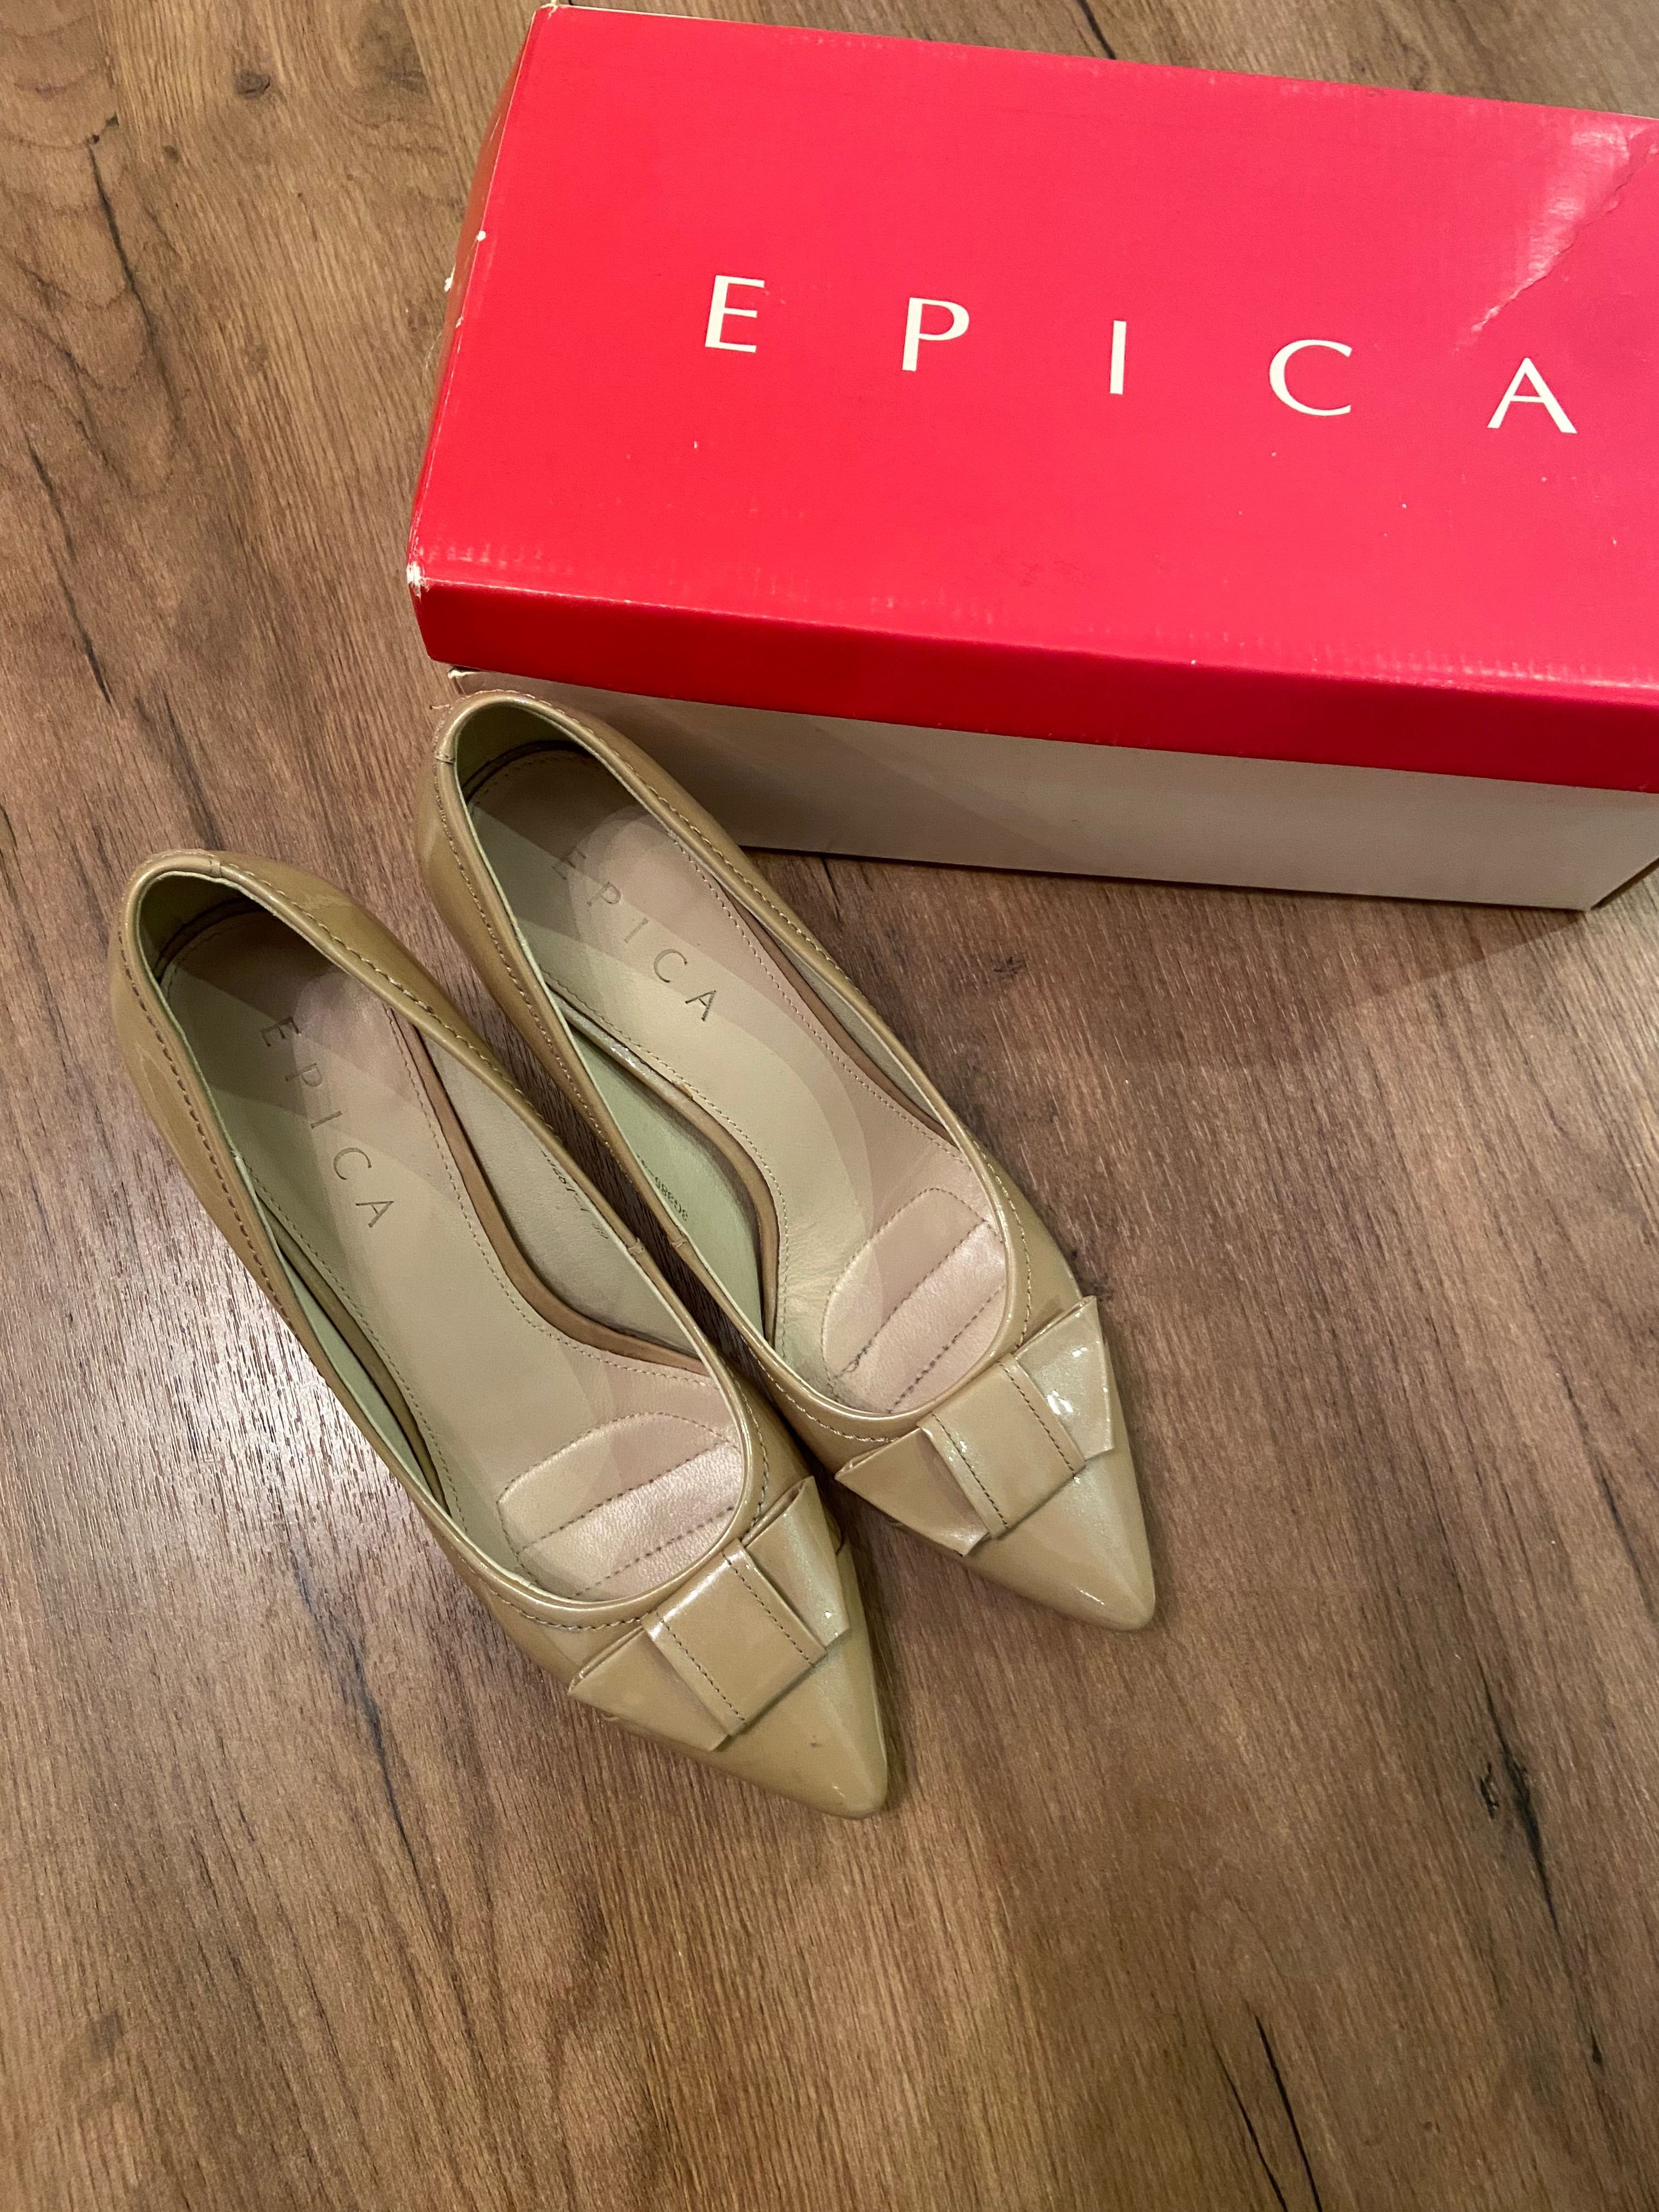 Pantofi Epica dama 39